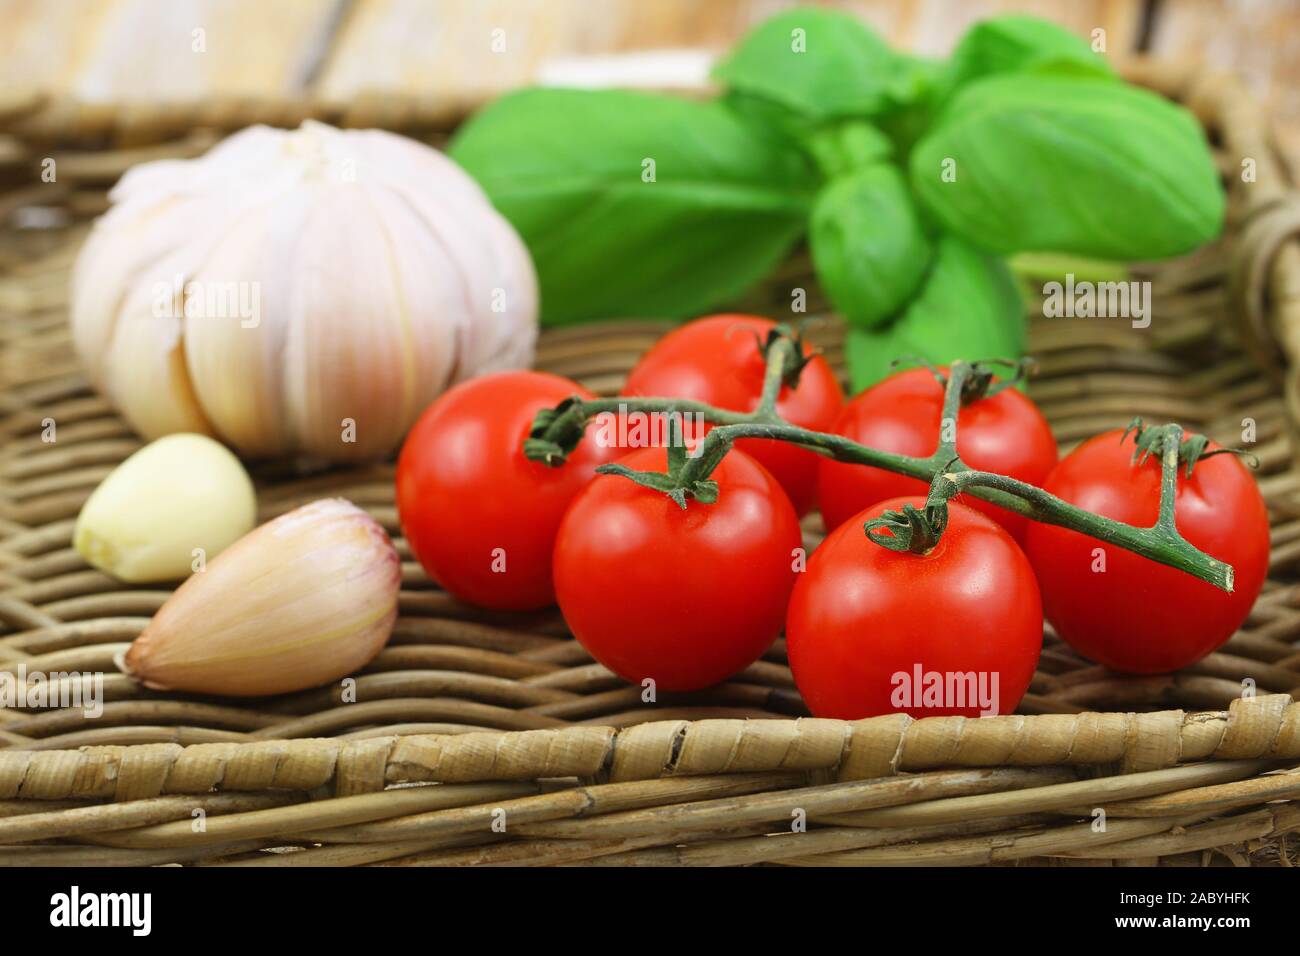 Selezione di freschi ingredienti organici per la pasta: pomodori ciliegia, aglio e basilico sul vassoio di vimini Foto Stock